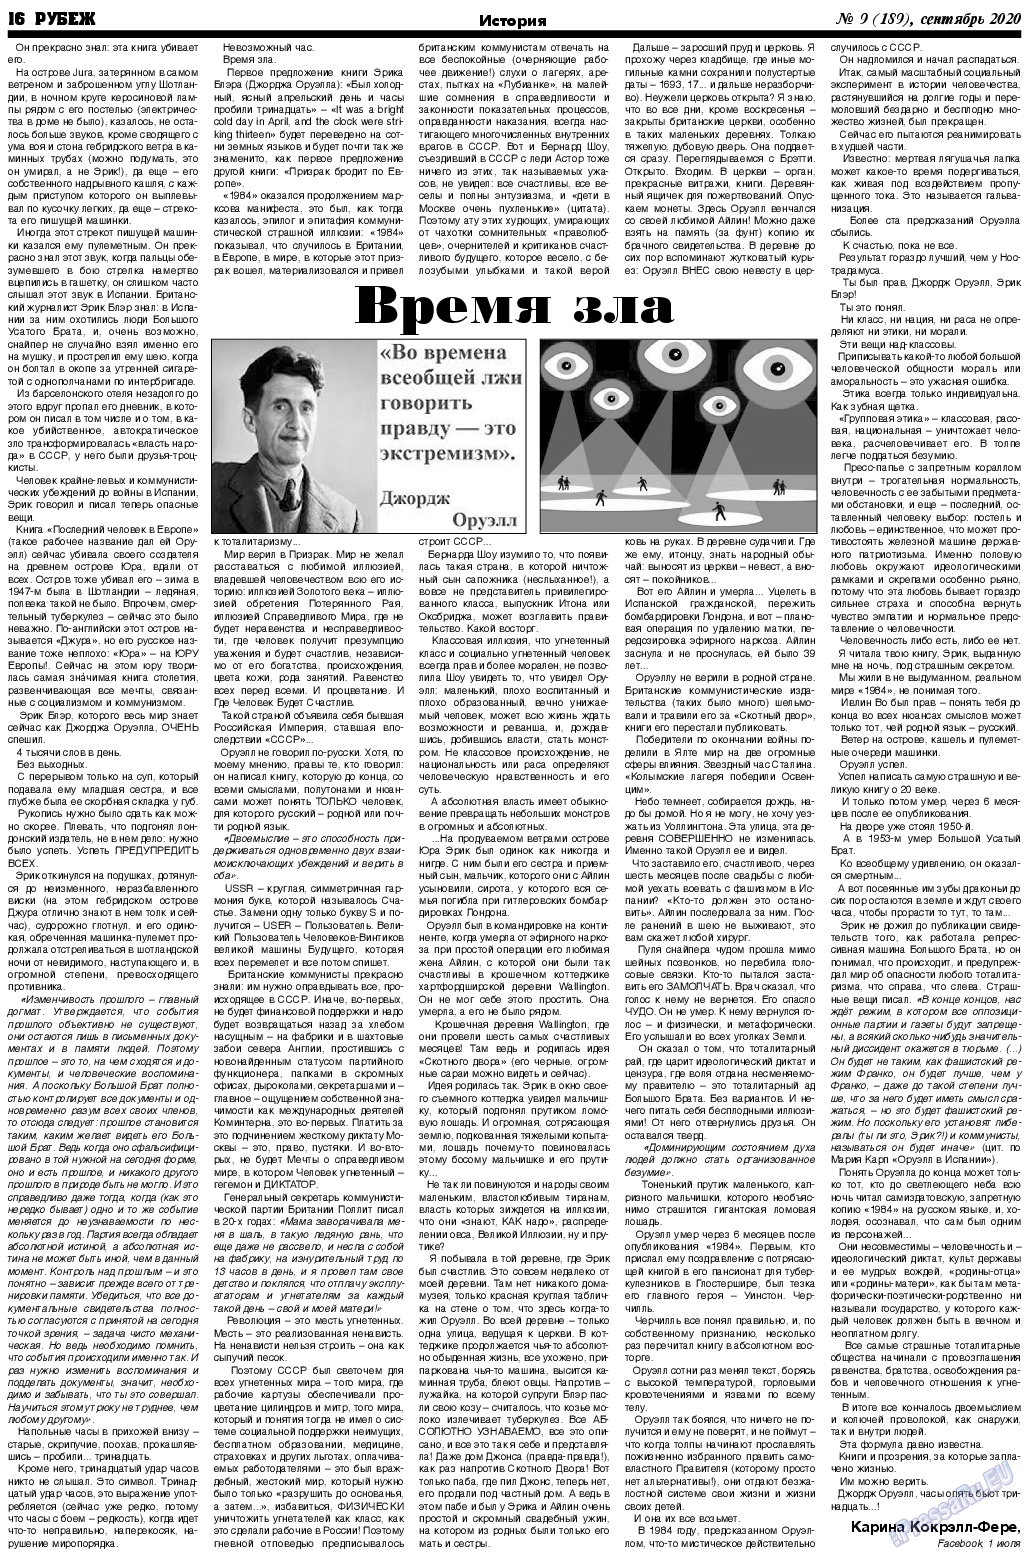 Рубеж (газета). 2020 год, номер 9, стр. 16